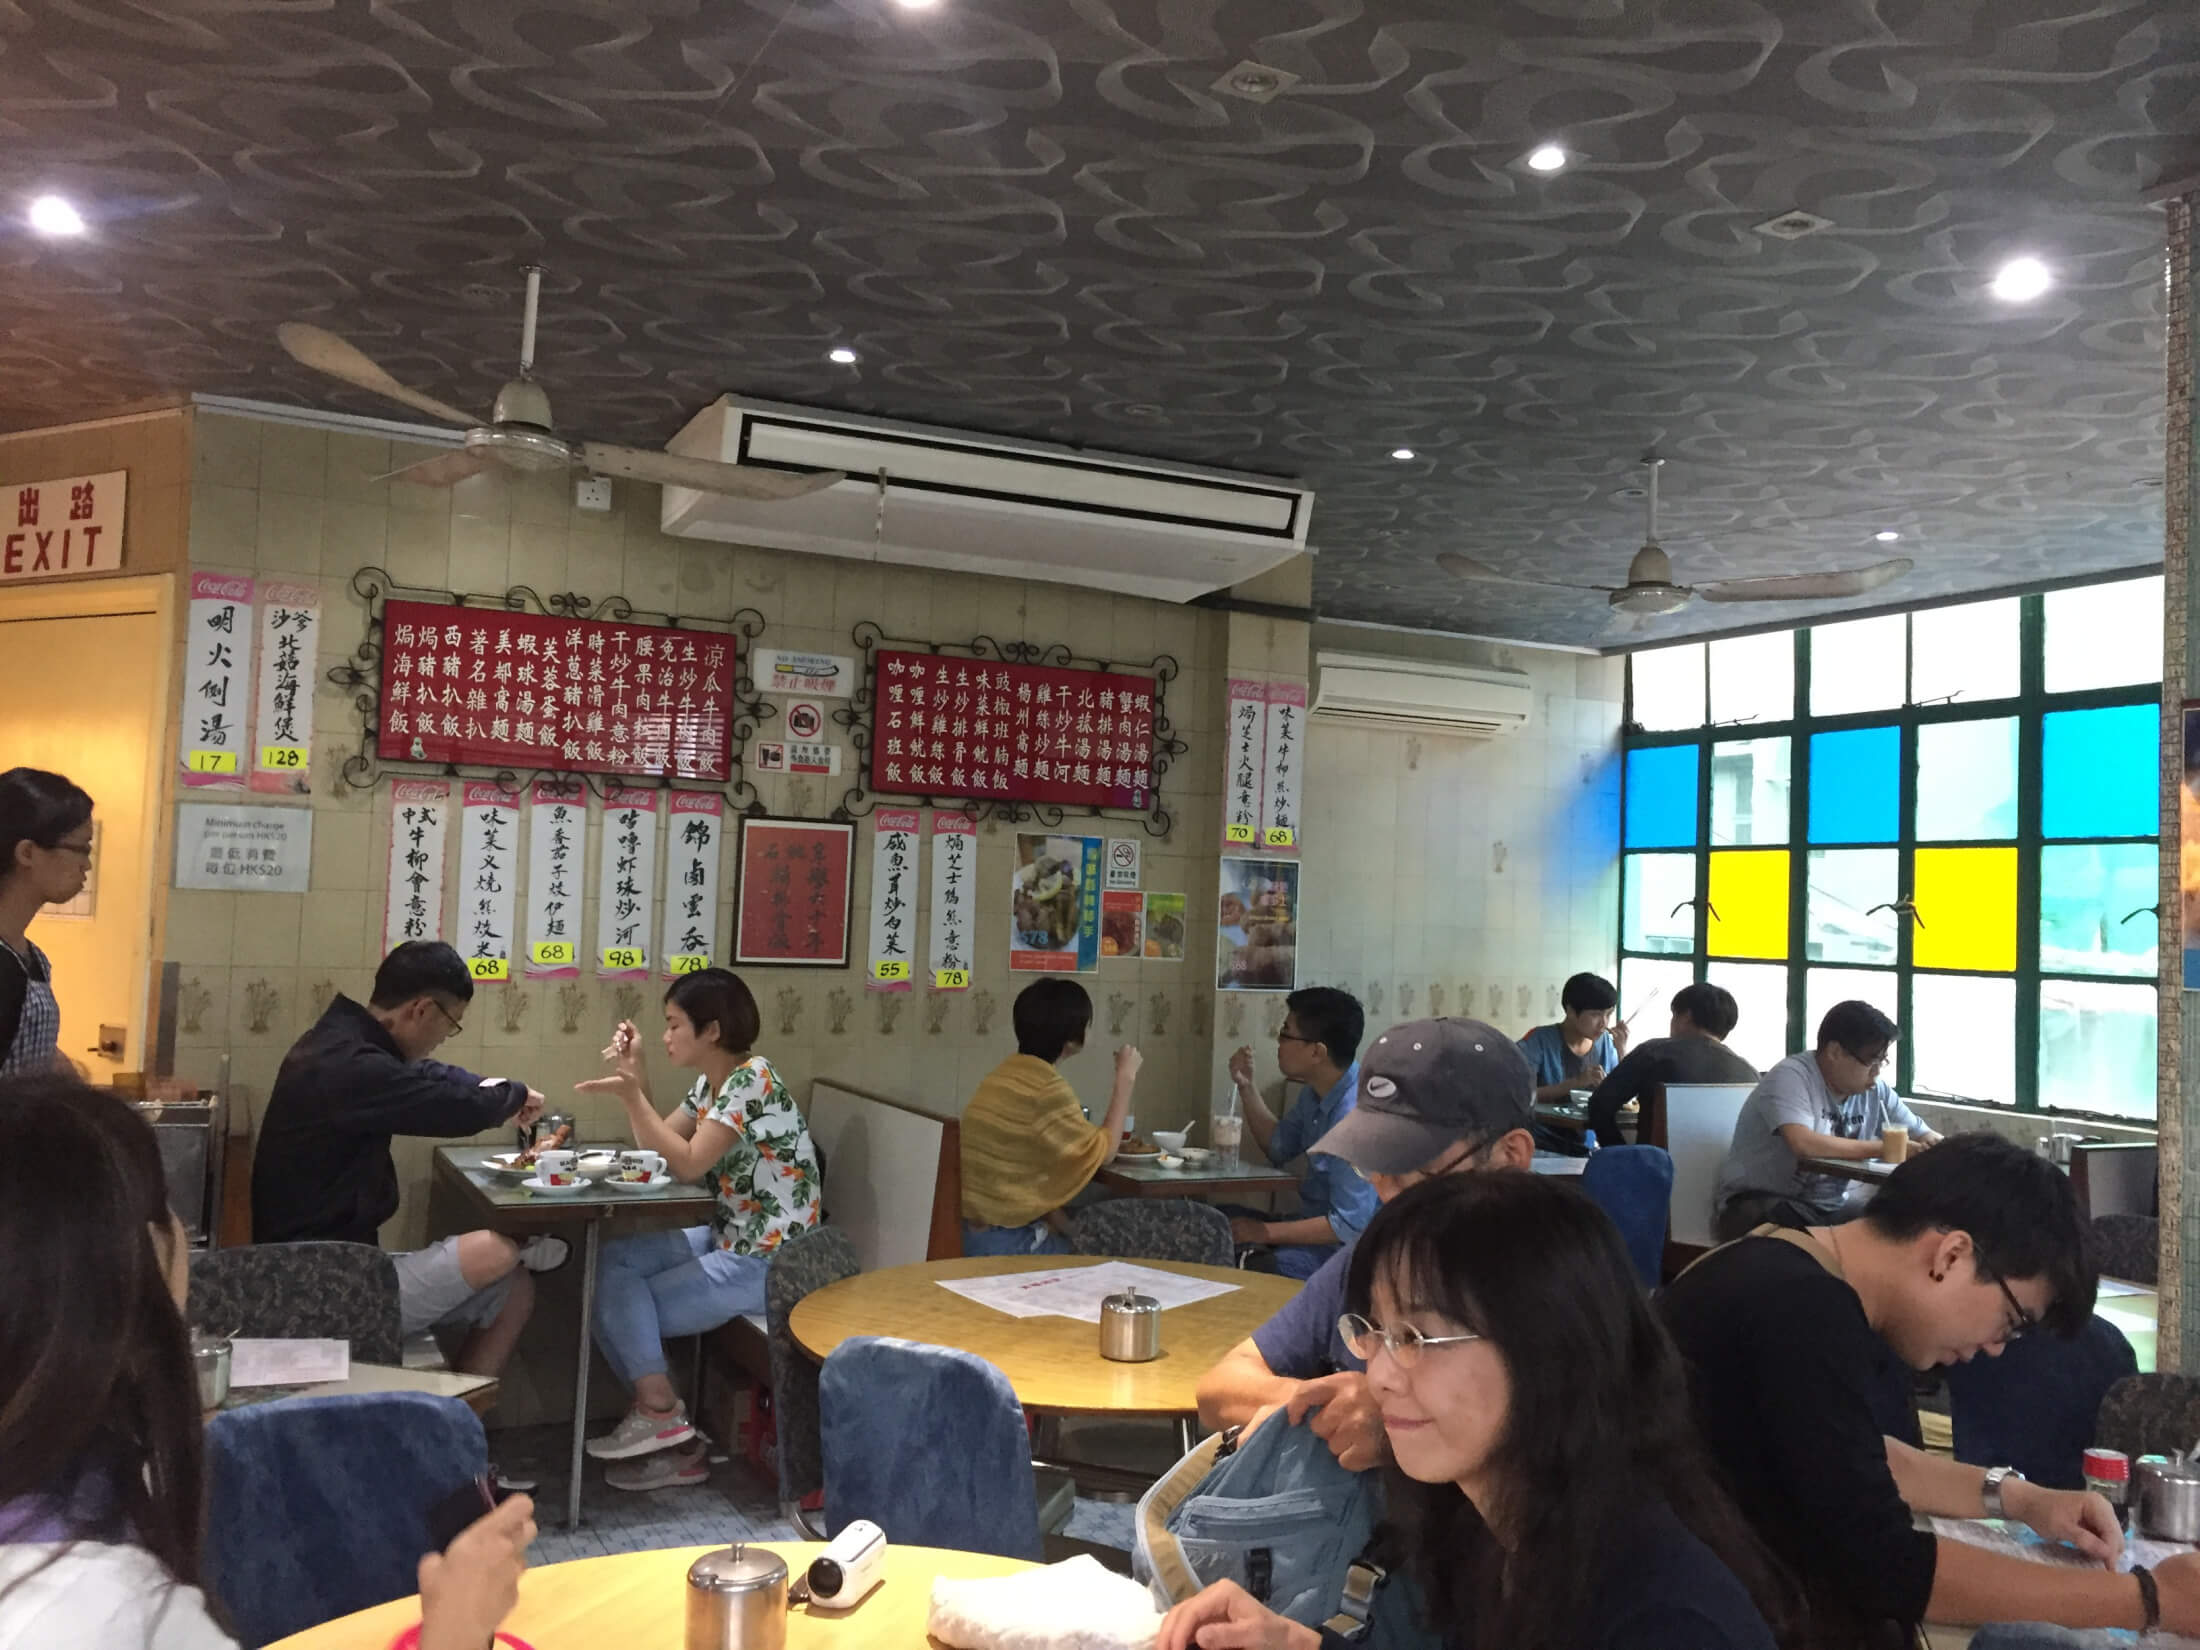 mido cafe hongkong china